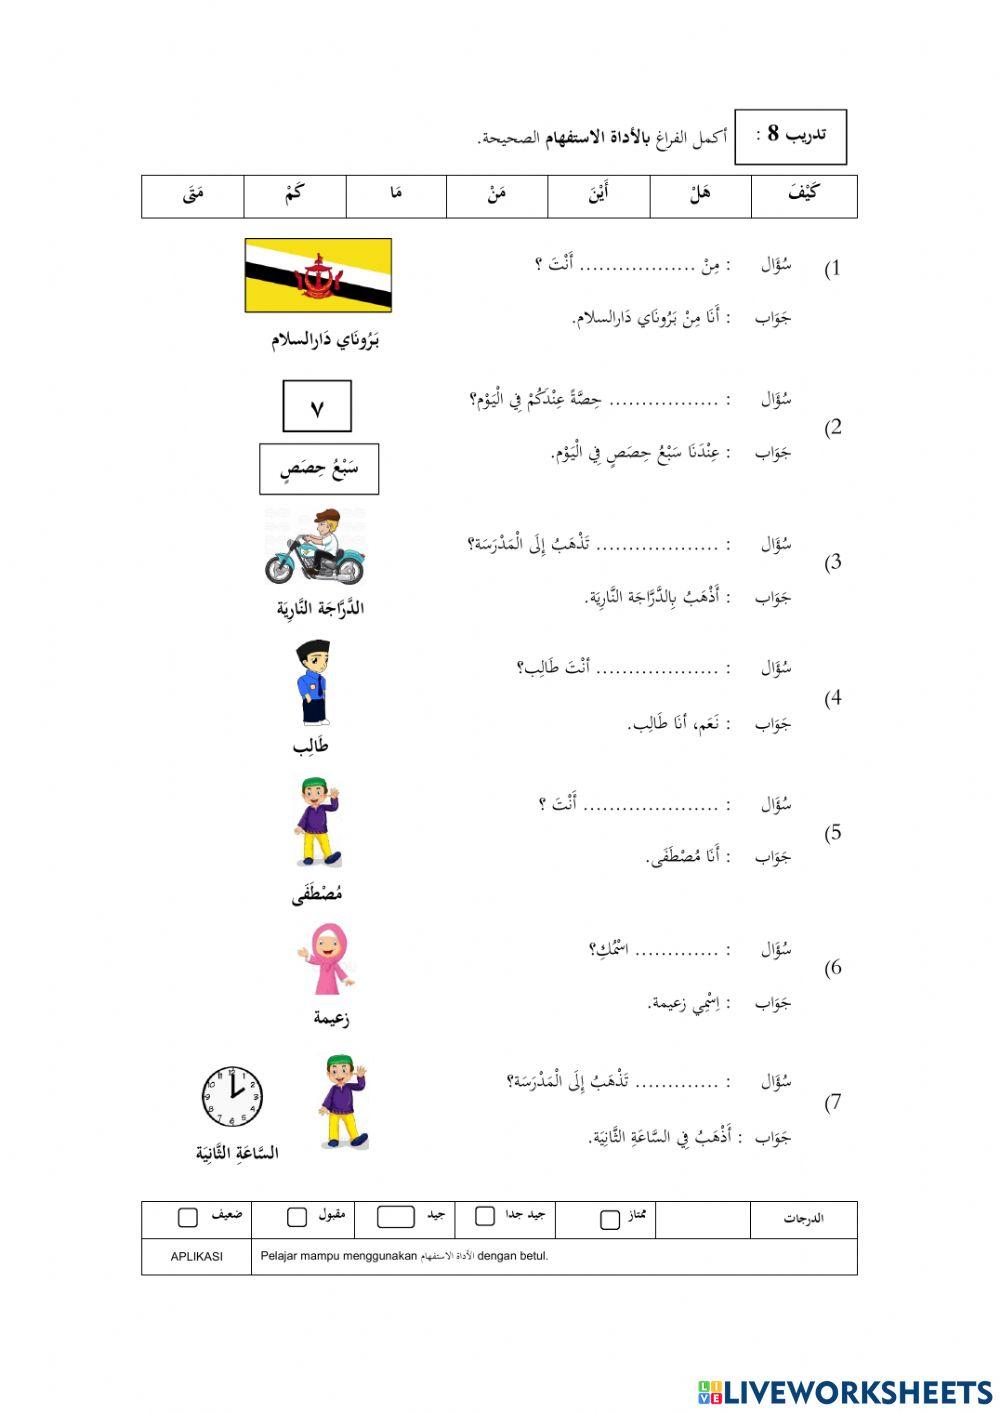 Hari-hari dalam bahasa arab